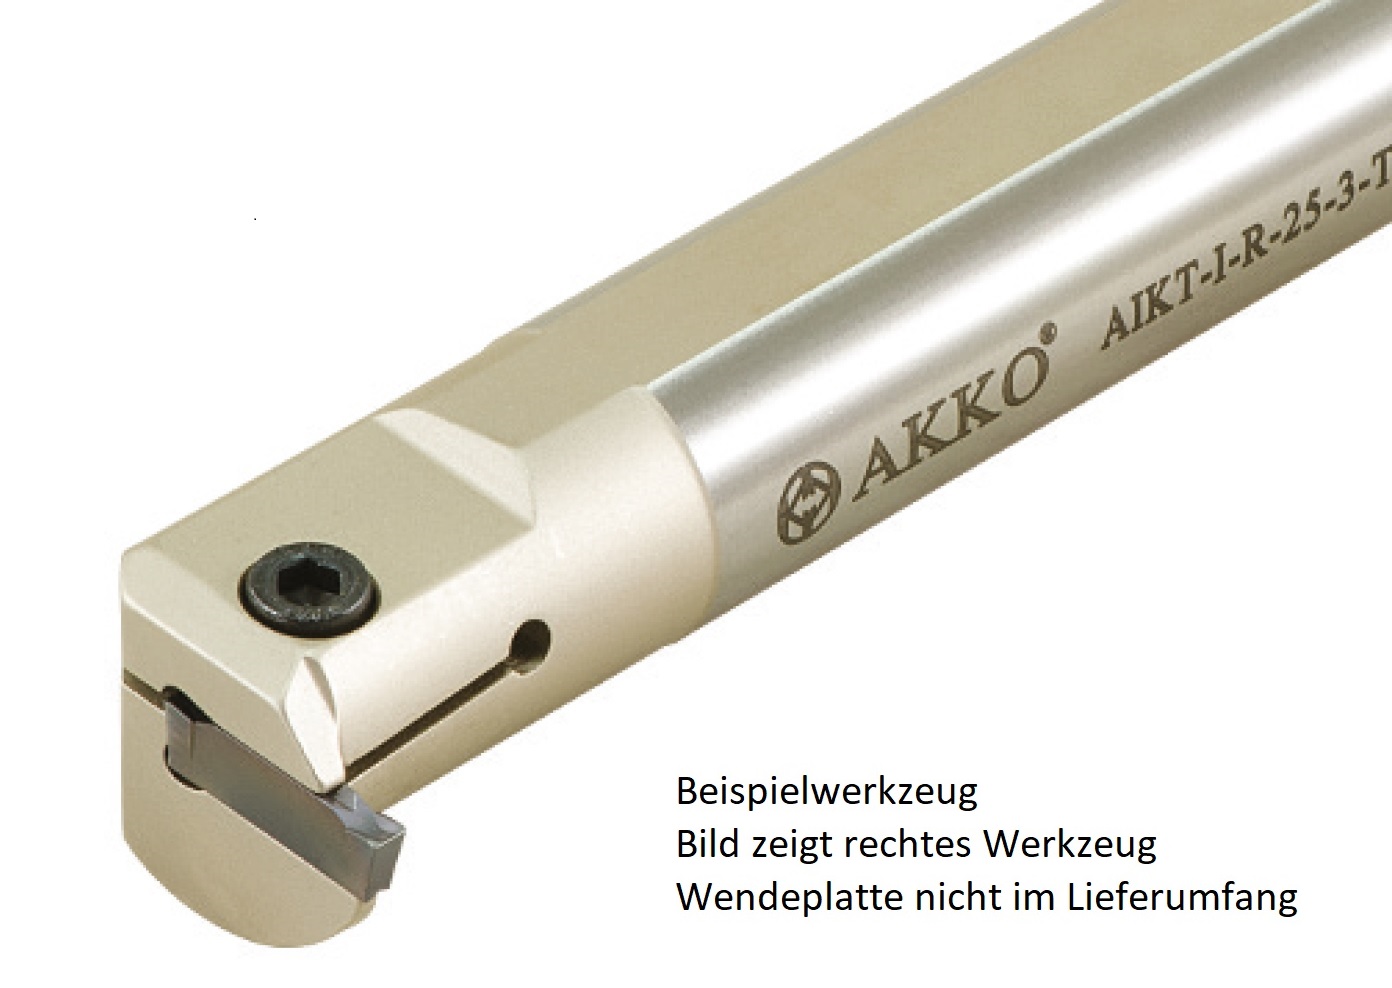 AKKO-Innen-Stechhalter, kompatibel mit Iscar-Stechplatte DGN-3
Schaft-ø 25, ohne Innenkühlung, rechts